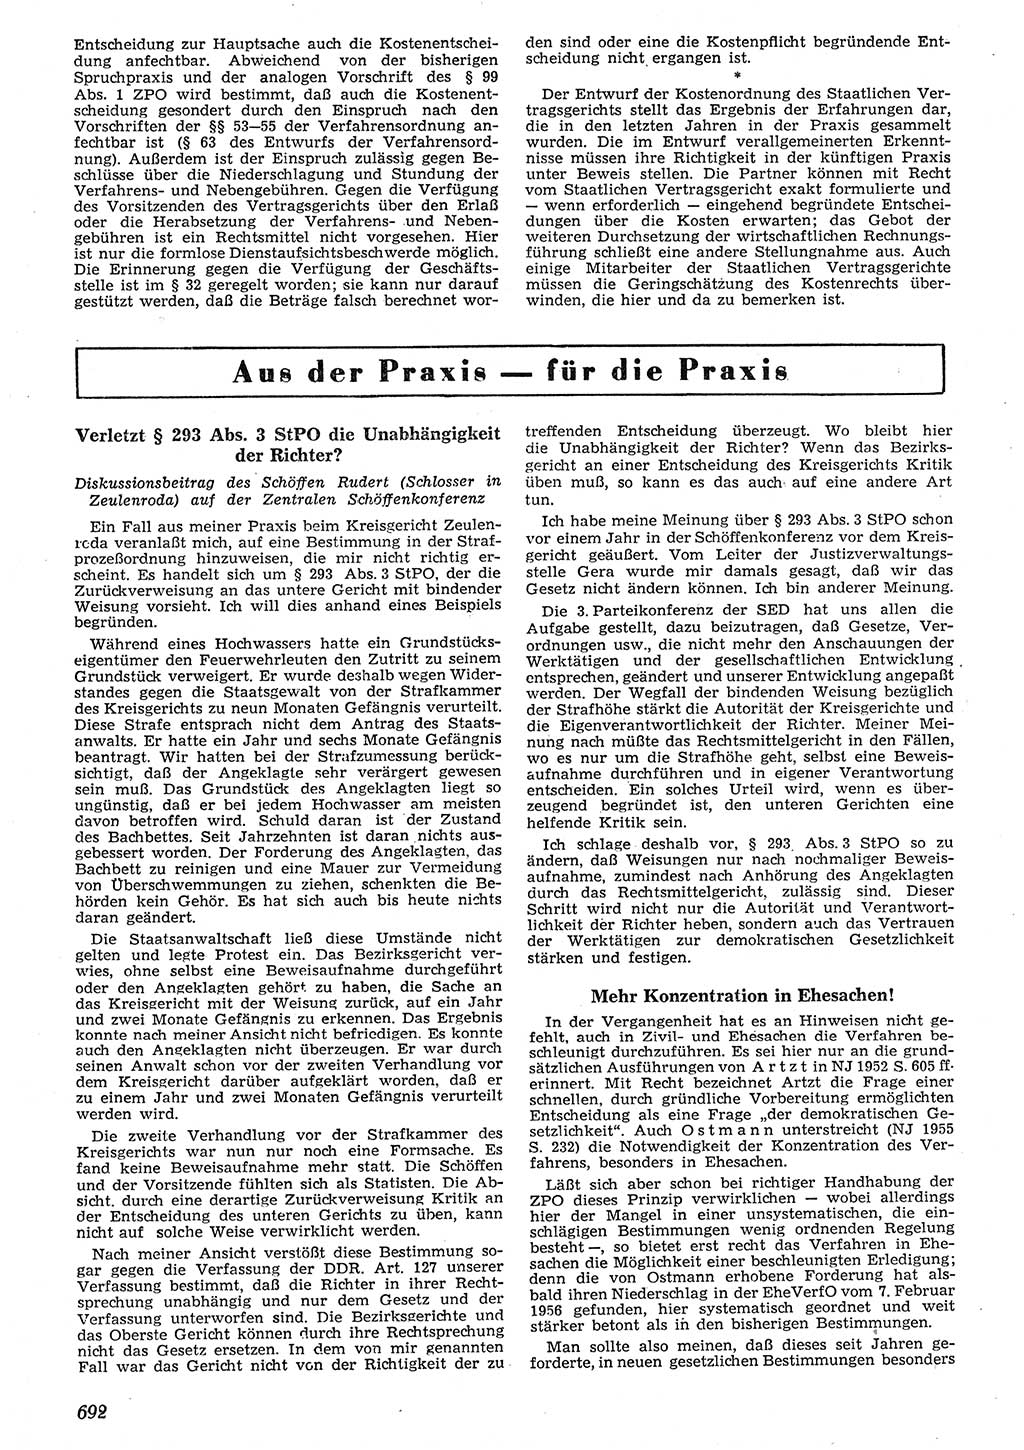 Neue Justiz (NJ), Zeitschrift für Recht und Rechtswissenschaft [Deutsche Demokratische Republik (DDR)], 10. Jahrgang 1956, Seite 692 (NJ DDR 1956, S. 692)